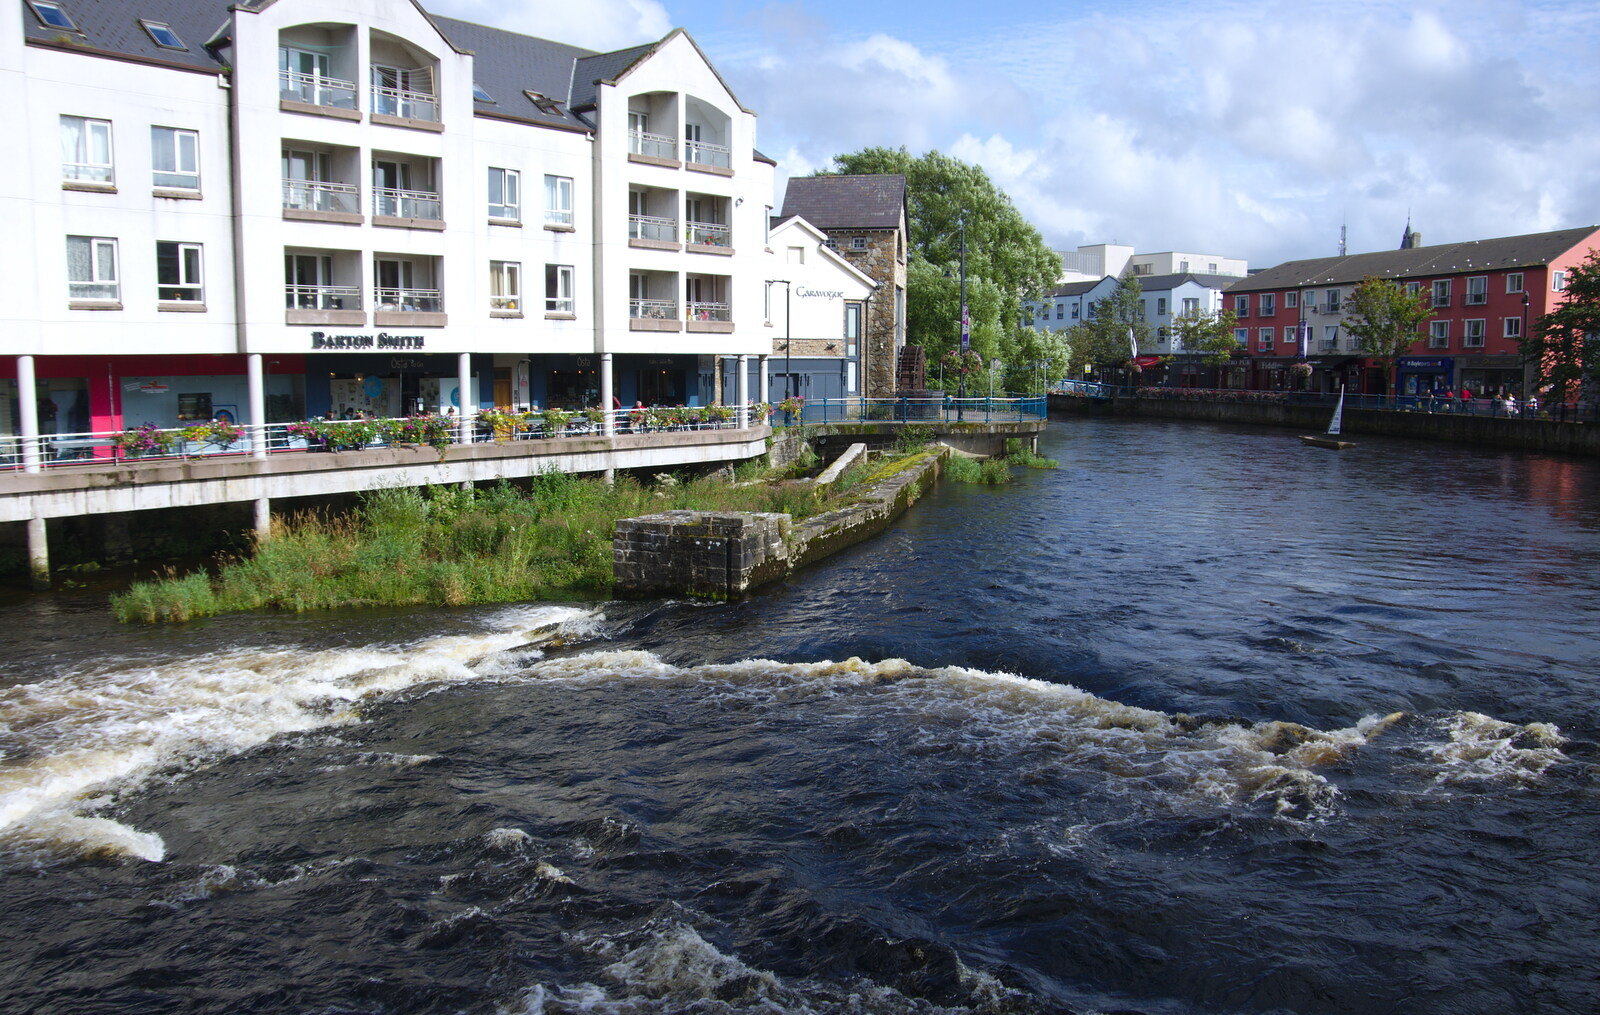 The Garavogue River from Florence Court and a Postcard from Sligo, Fermanagh and Sligo, Ireland - 21st August 2019